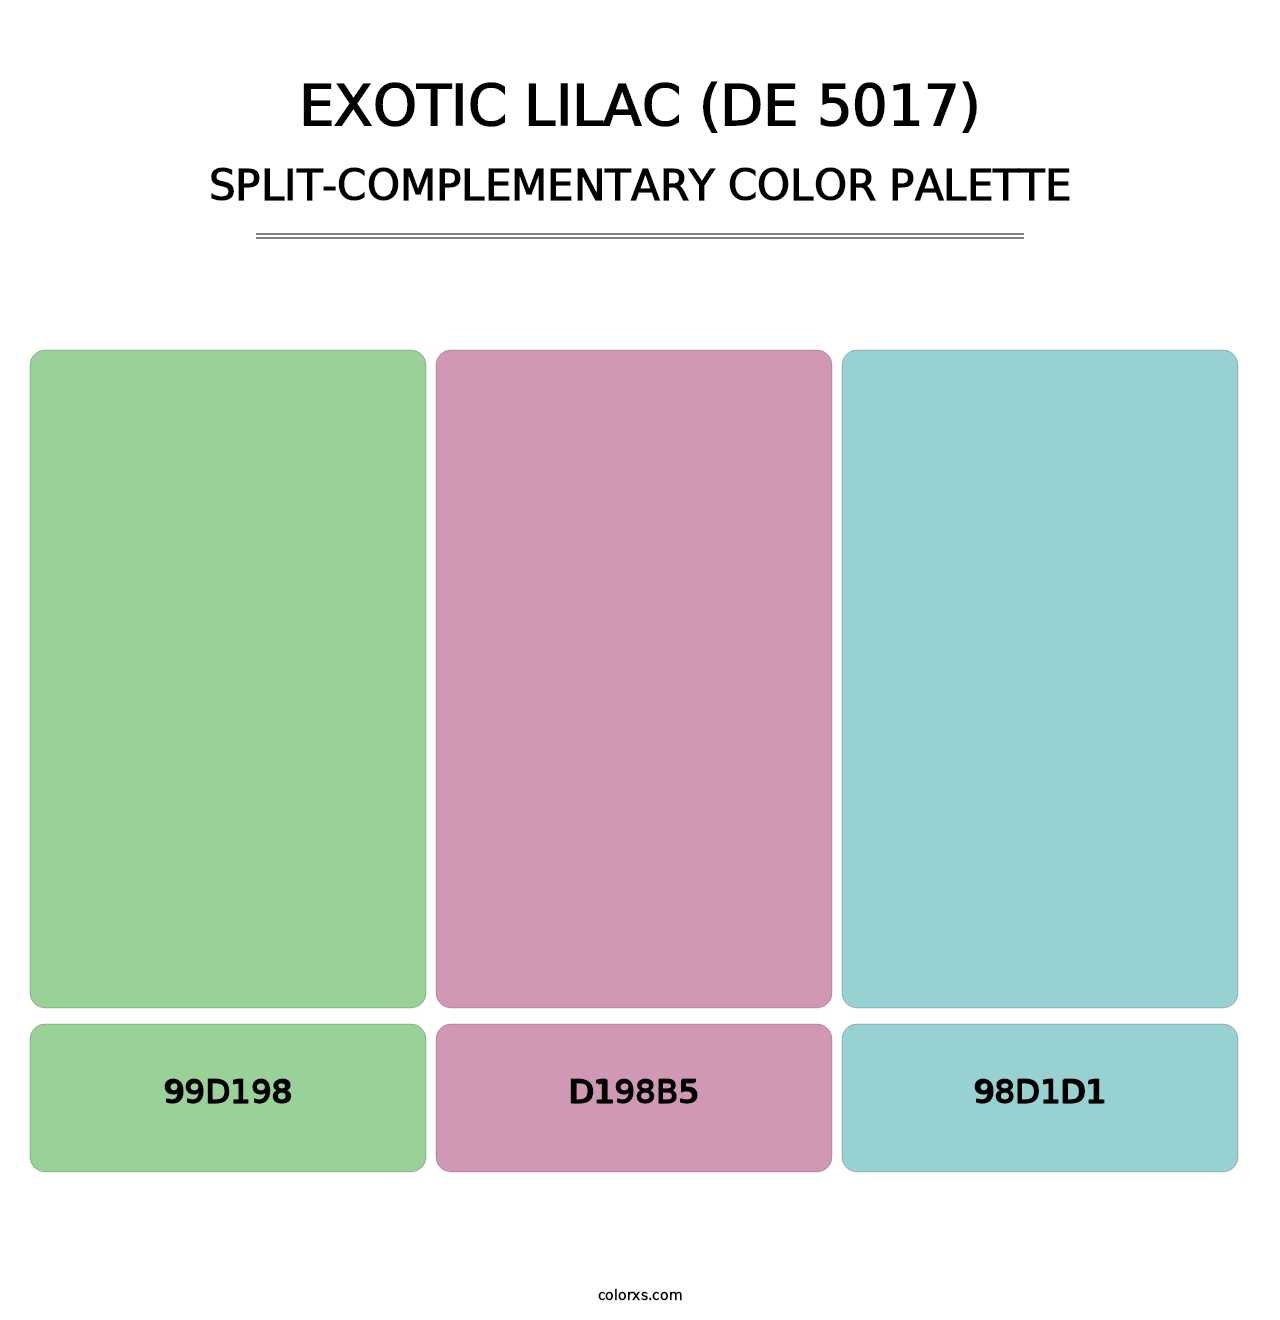 Exotic Lilac (DE 5017) - Split-Complementary Color Palette